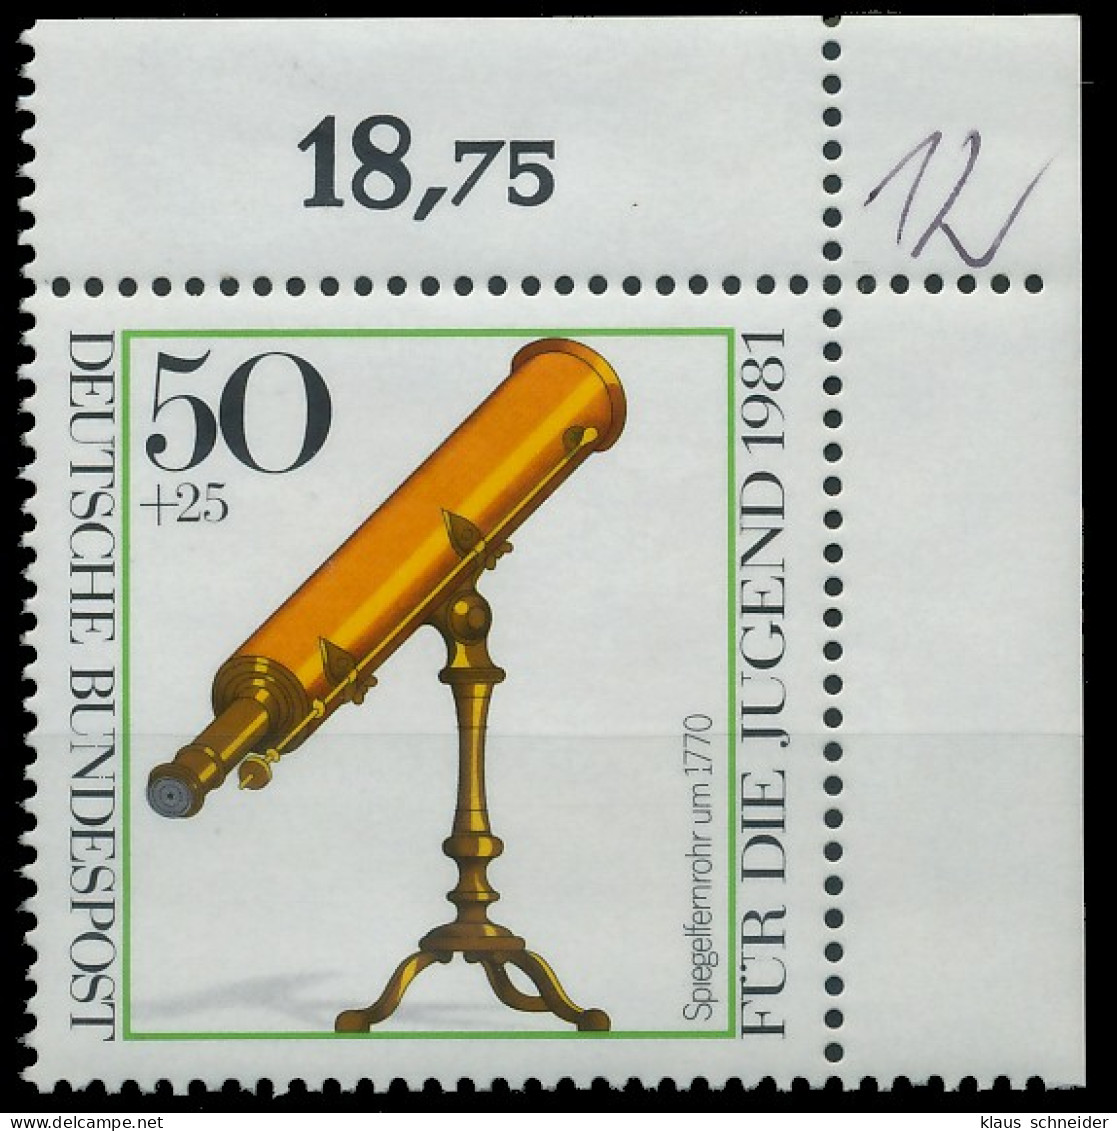 BRD BUND 1981 Nr 1091 Postfrisch ECKE-ORE X3D67DA - Ungebraucht